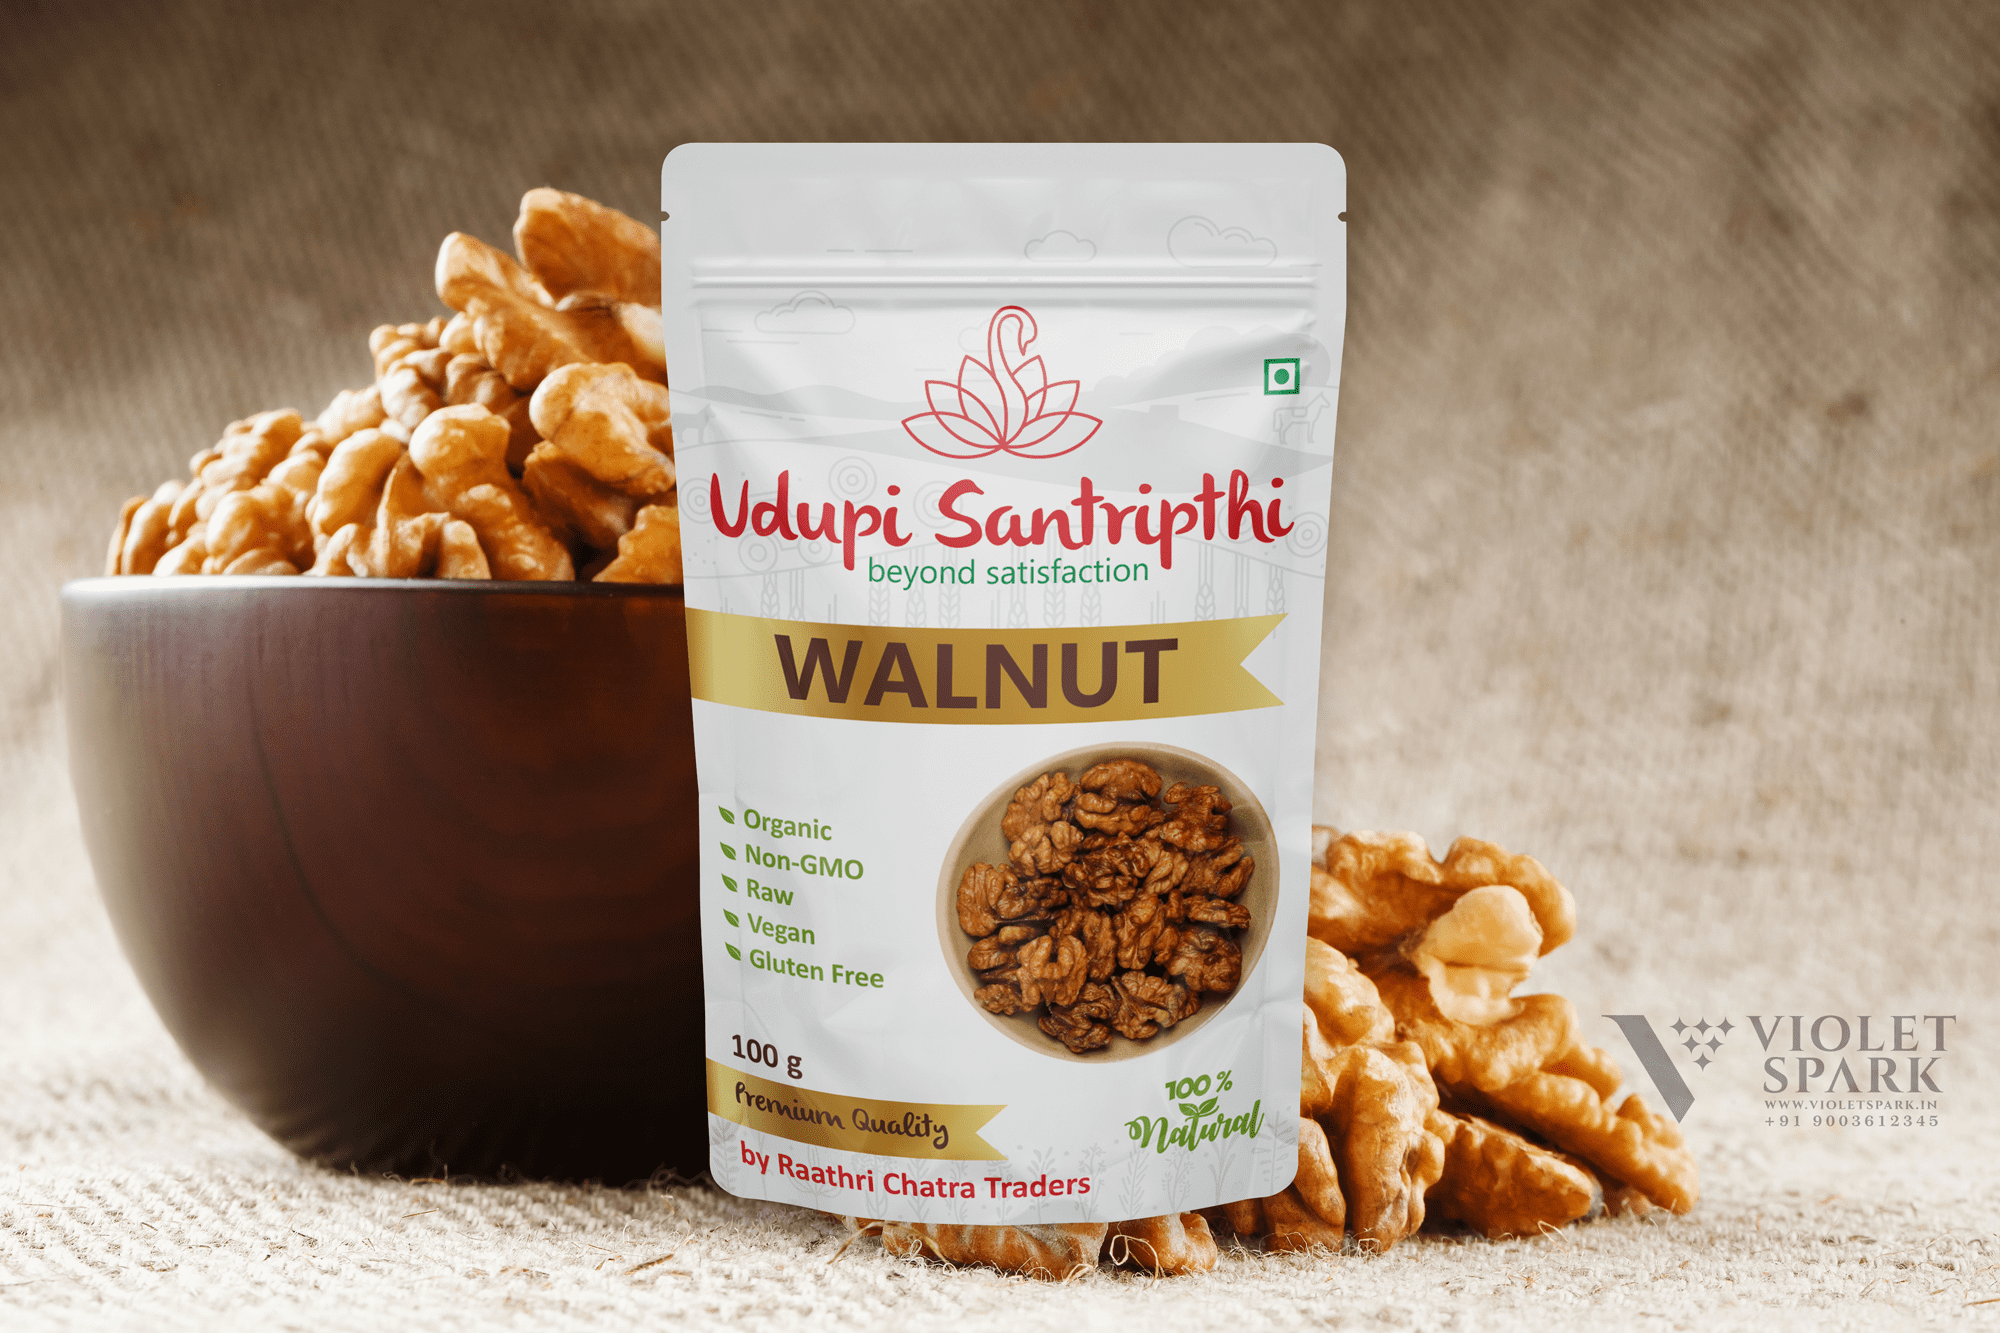 Udupi Santripthi Brand Walnut Branding Packaging Design Digital Marketing in Coorg by Violet Spark